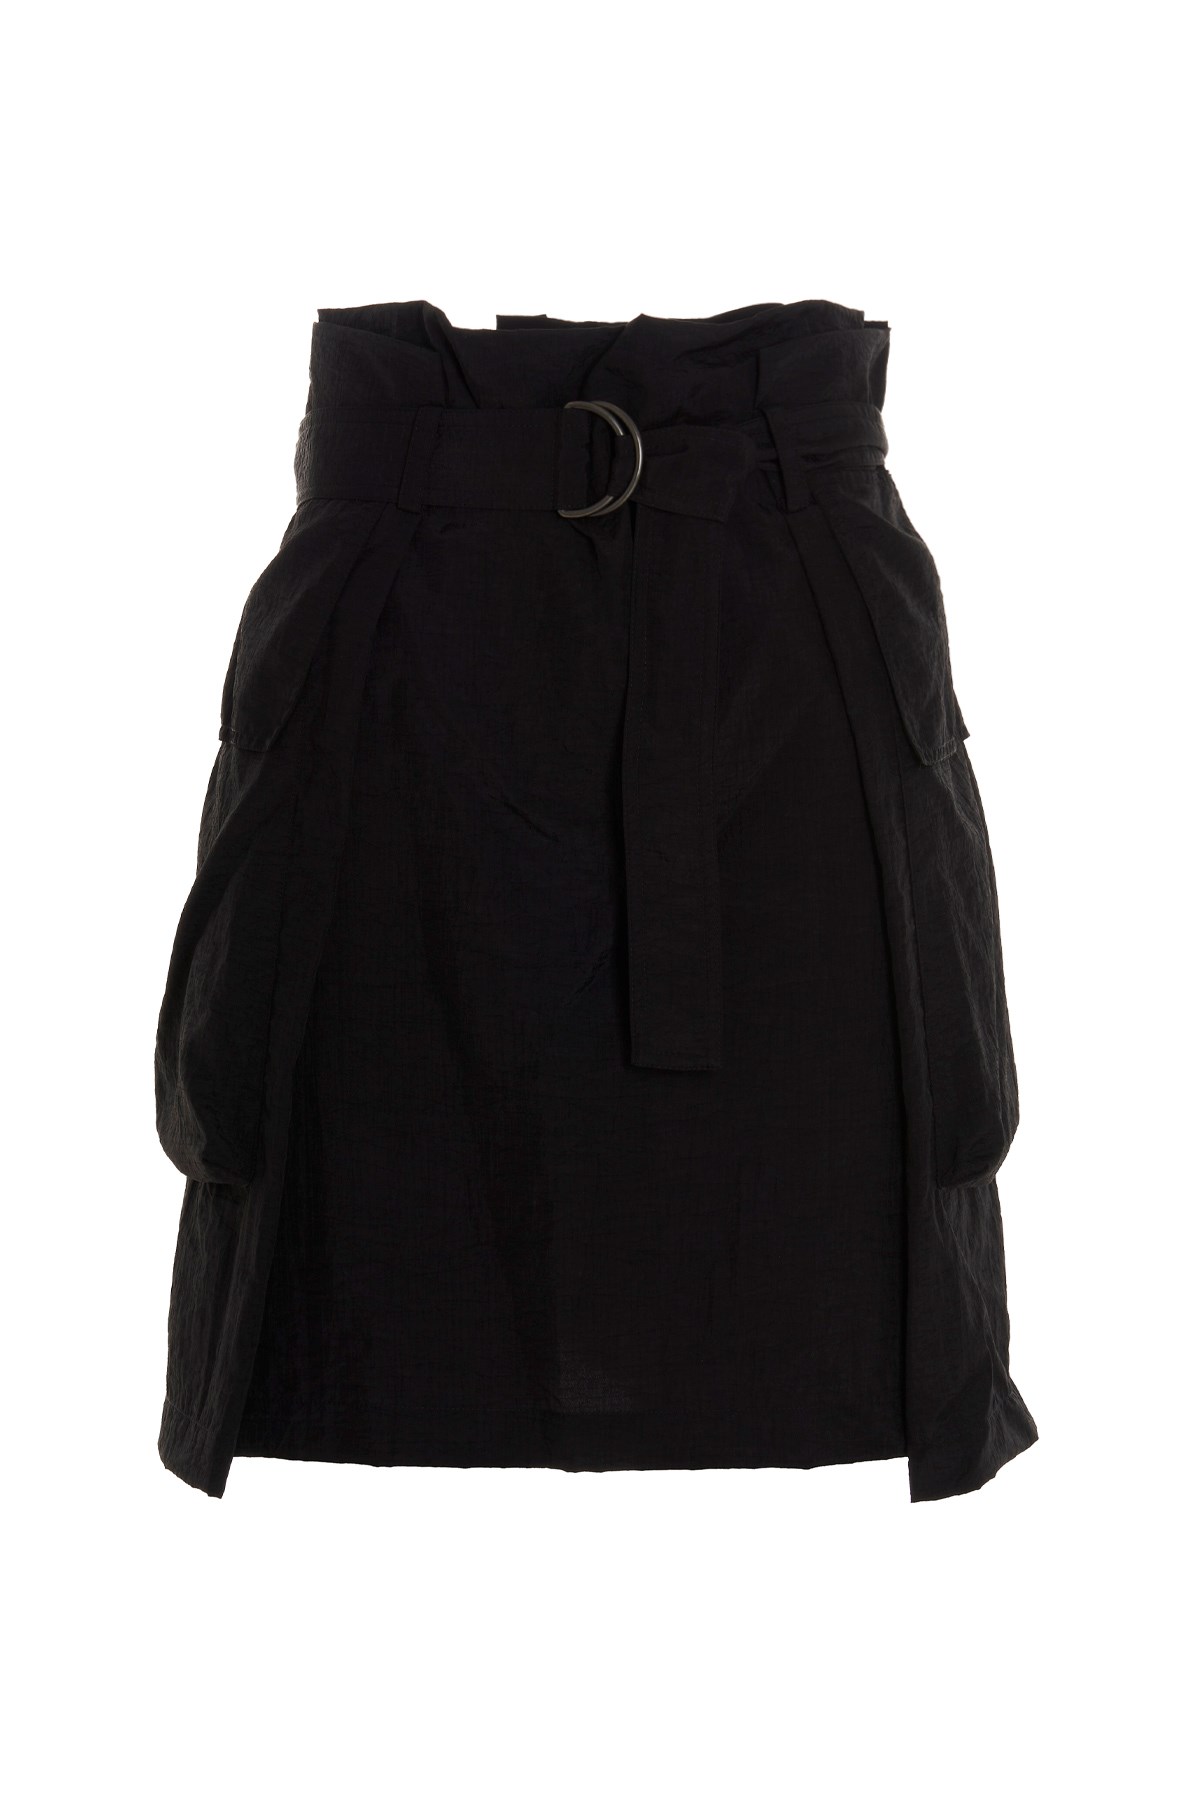 KENZO Nylon Belted Skirt